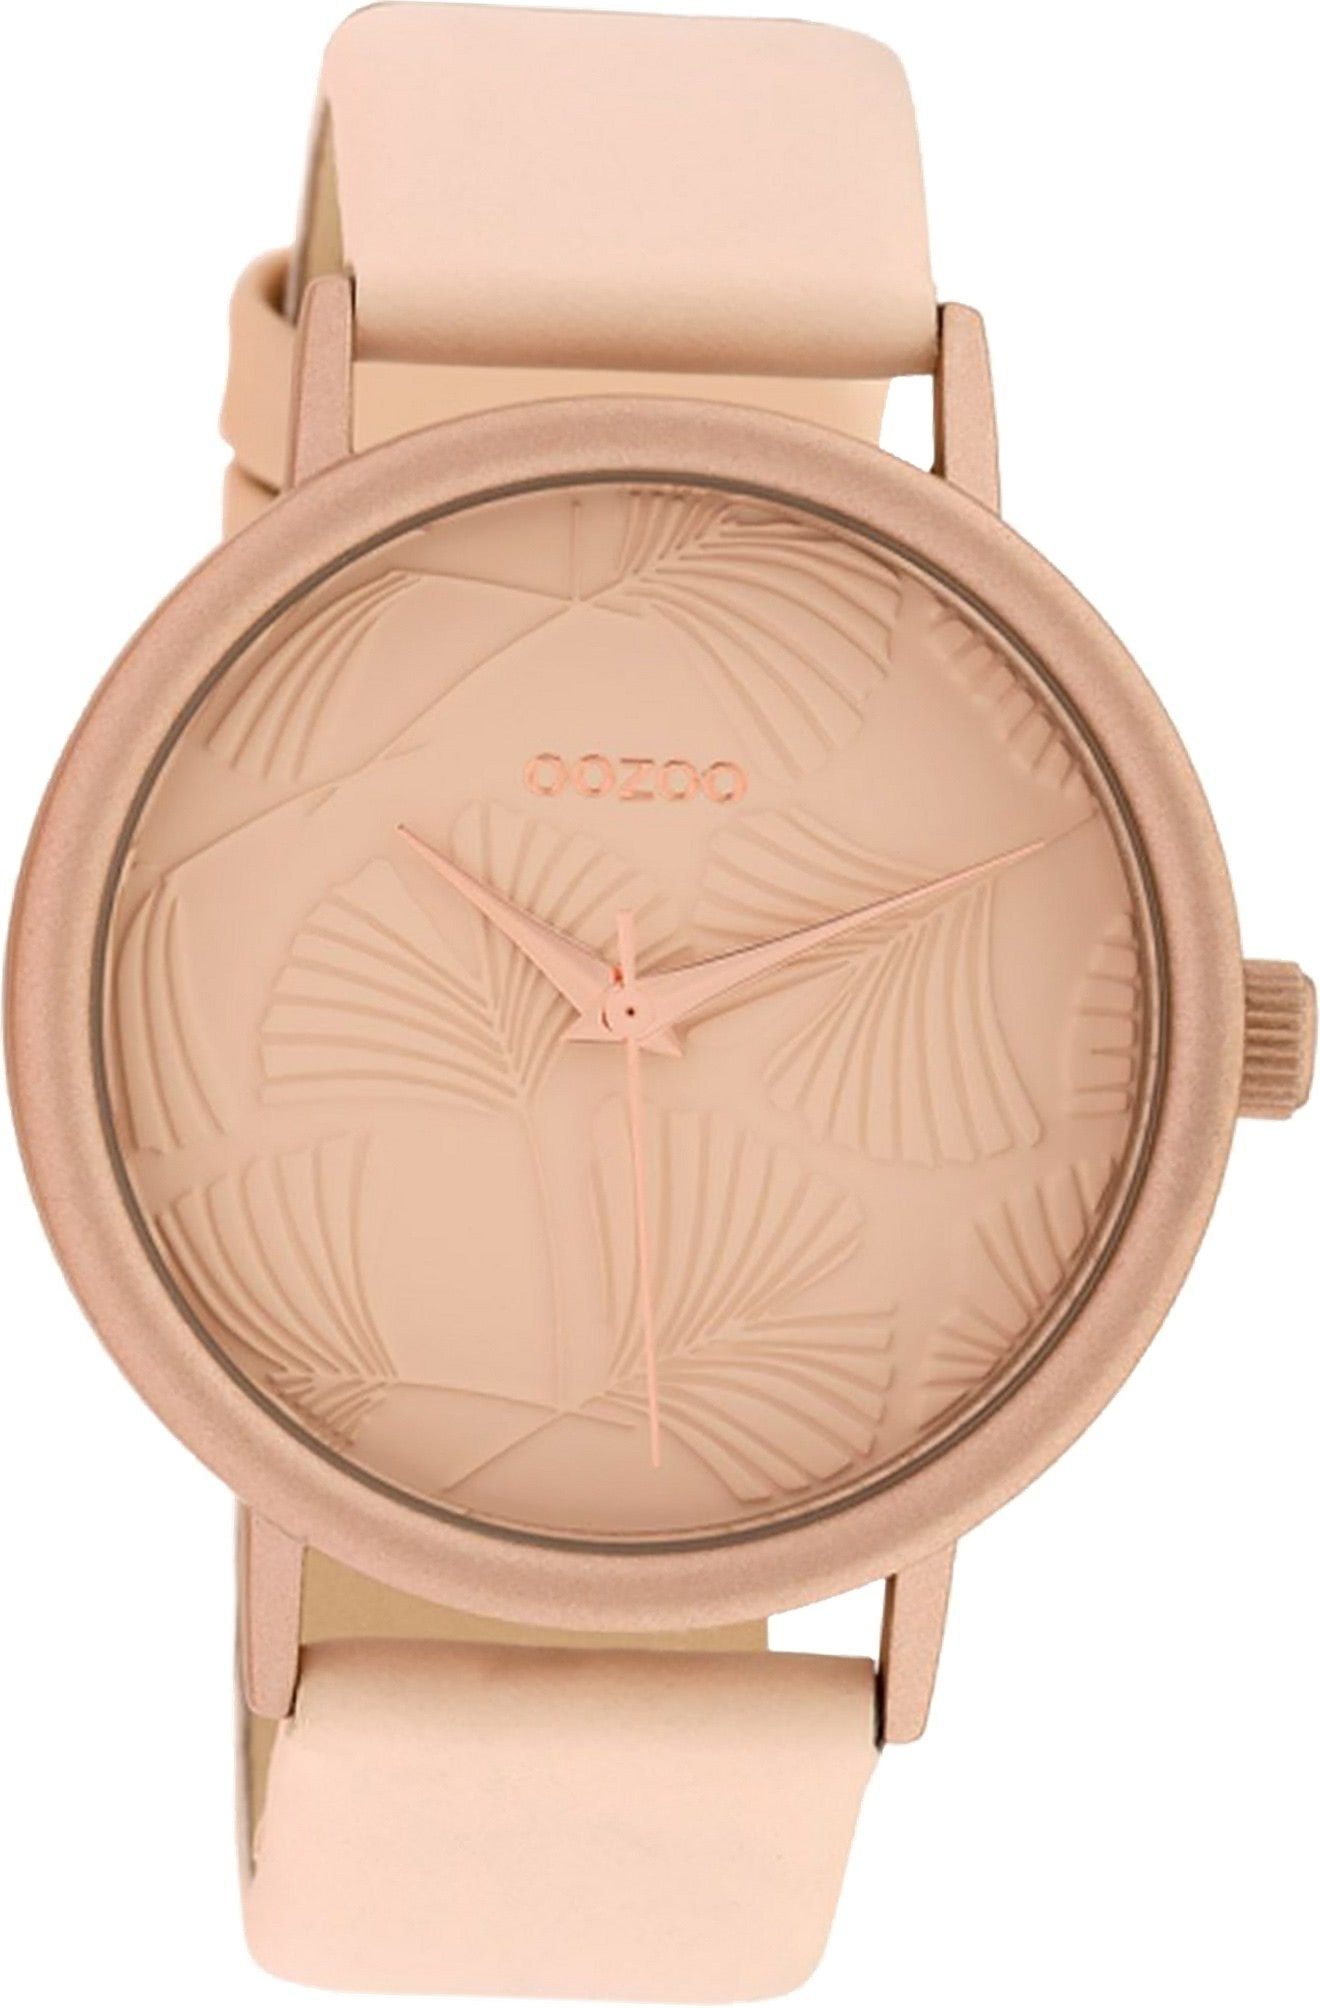 OOZOO Quarzuhr Oozoo Leder Damen Uhr C10390 Analog, Damenuhr Lederarmband rosa, rundes Gehäuse, groß (ca. 42mm)